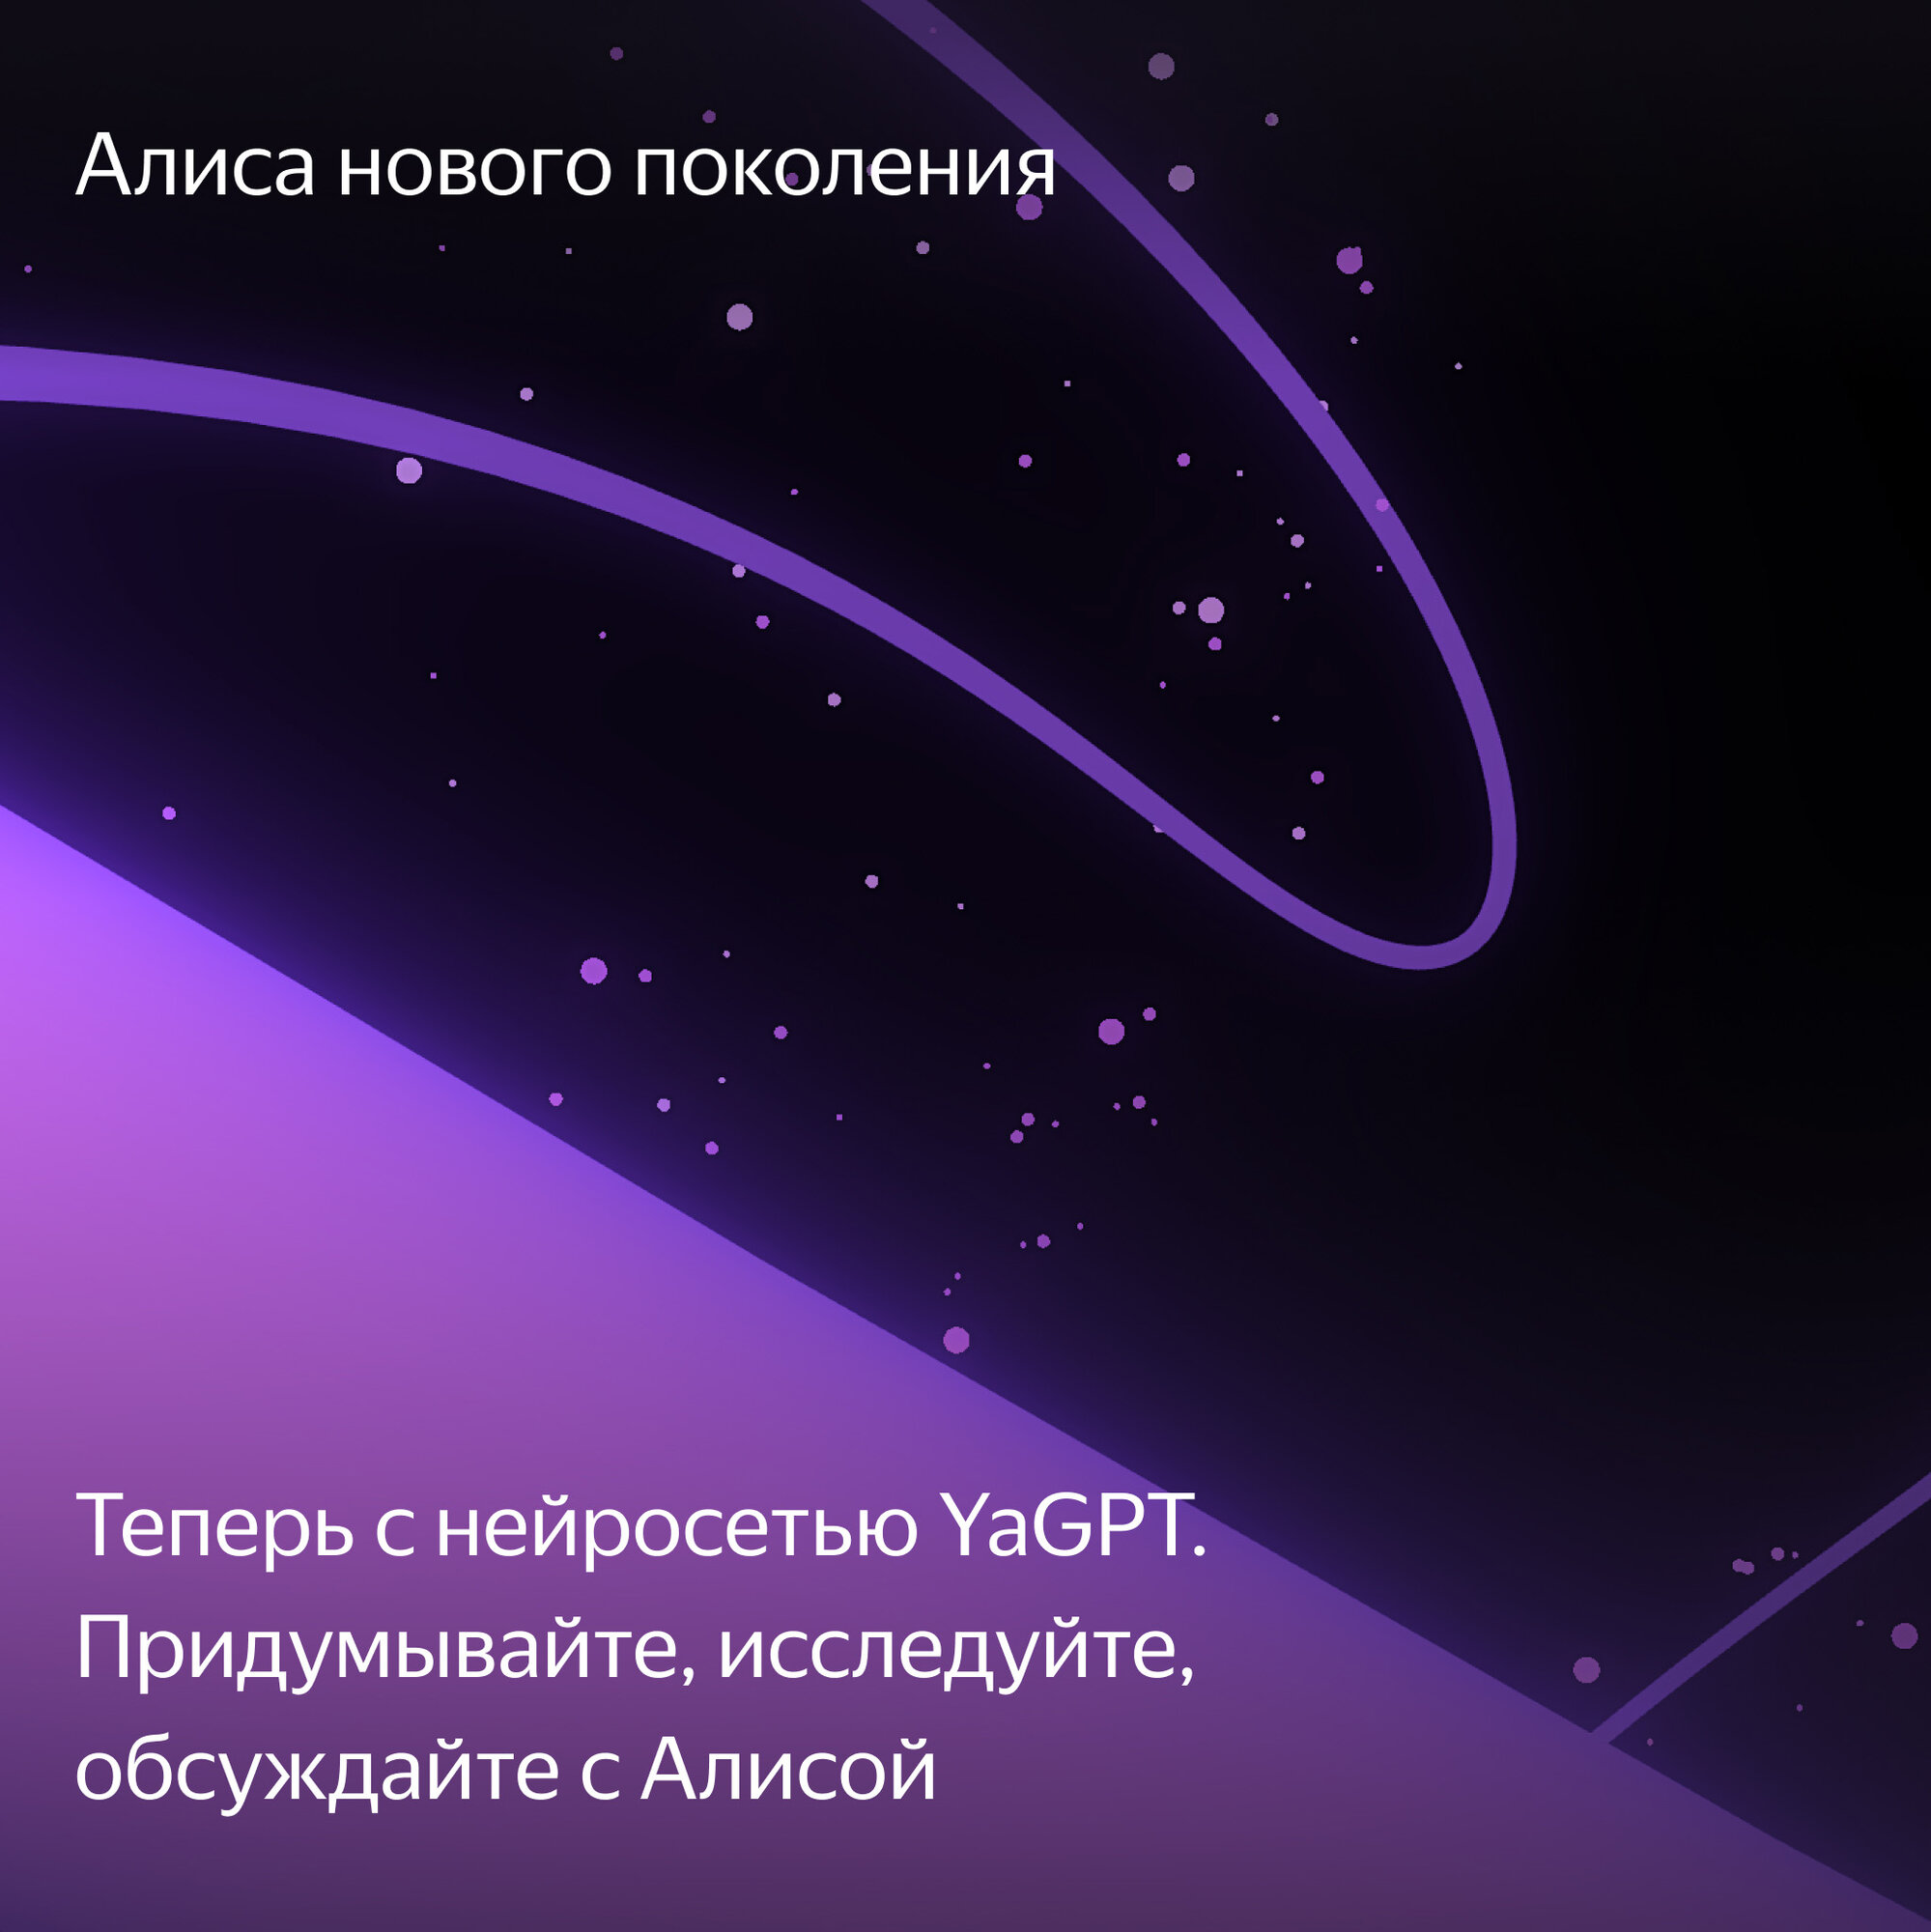 Умная колонка Яндекс Станция 2 с Алисой на YandexGPT, черный антрацит